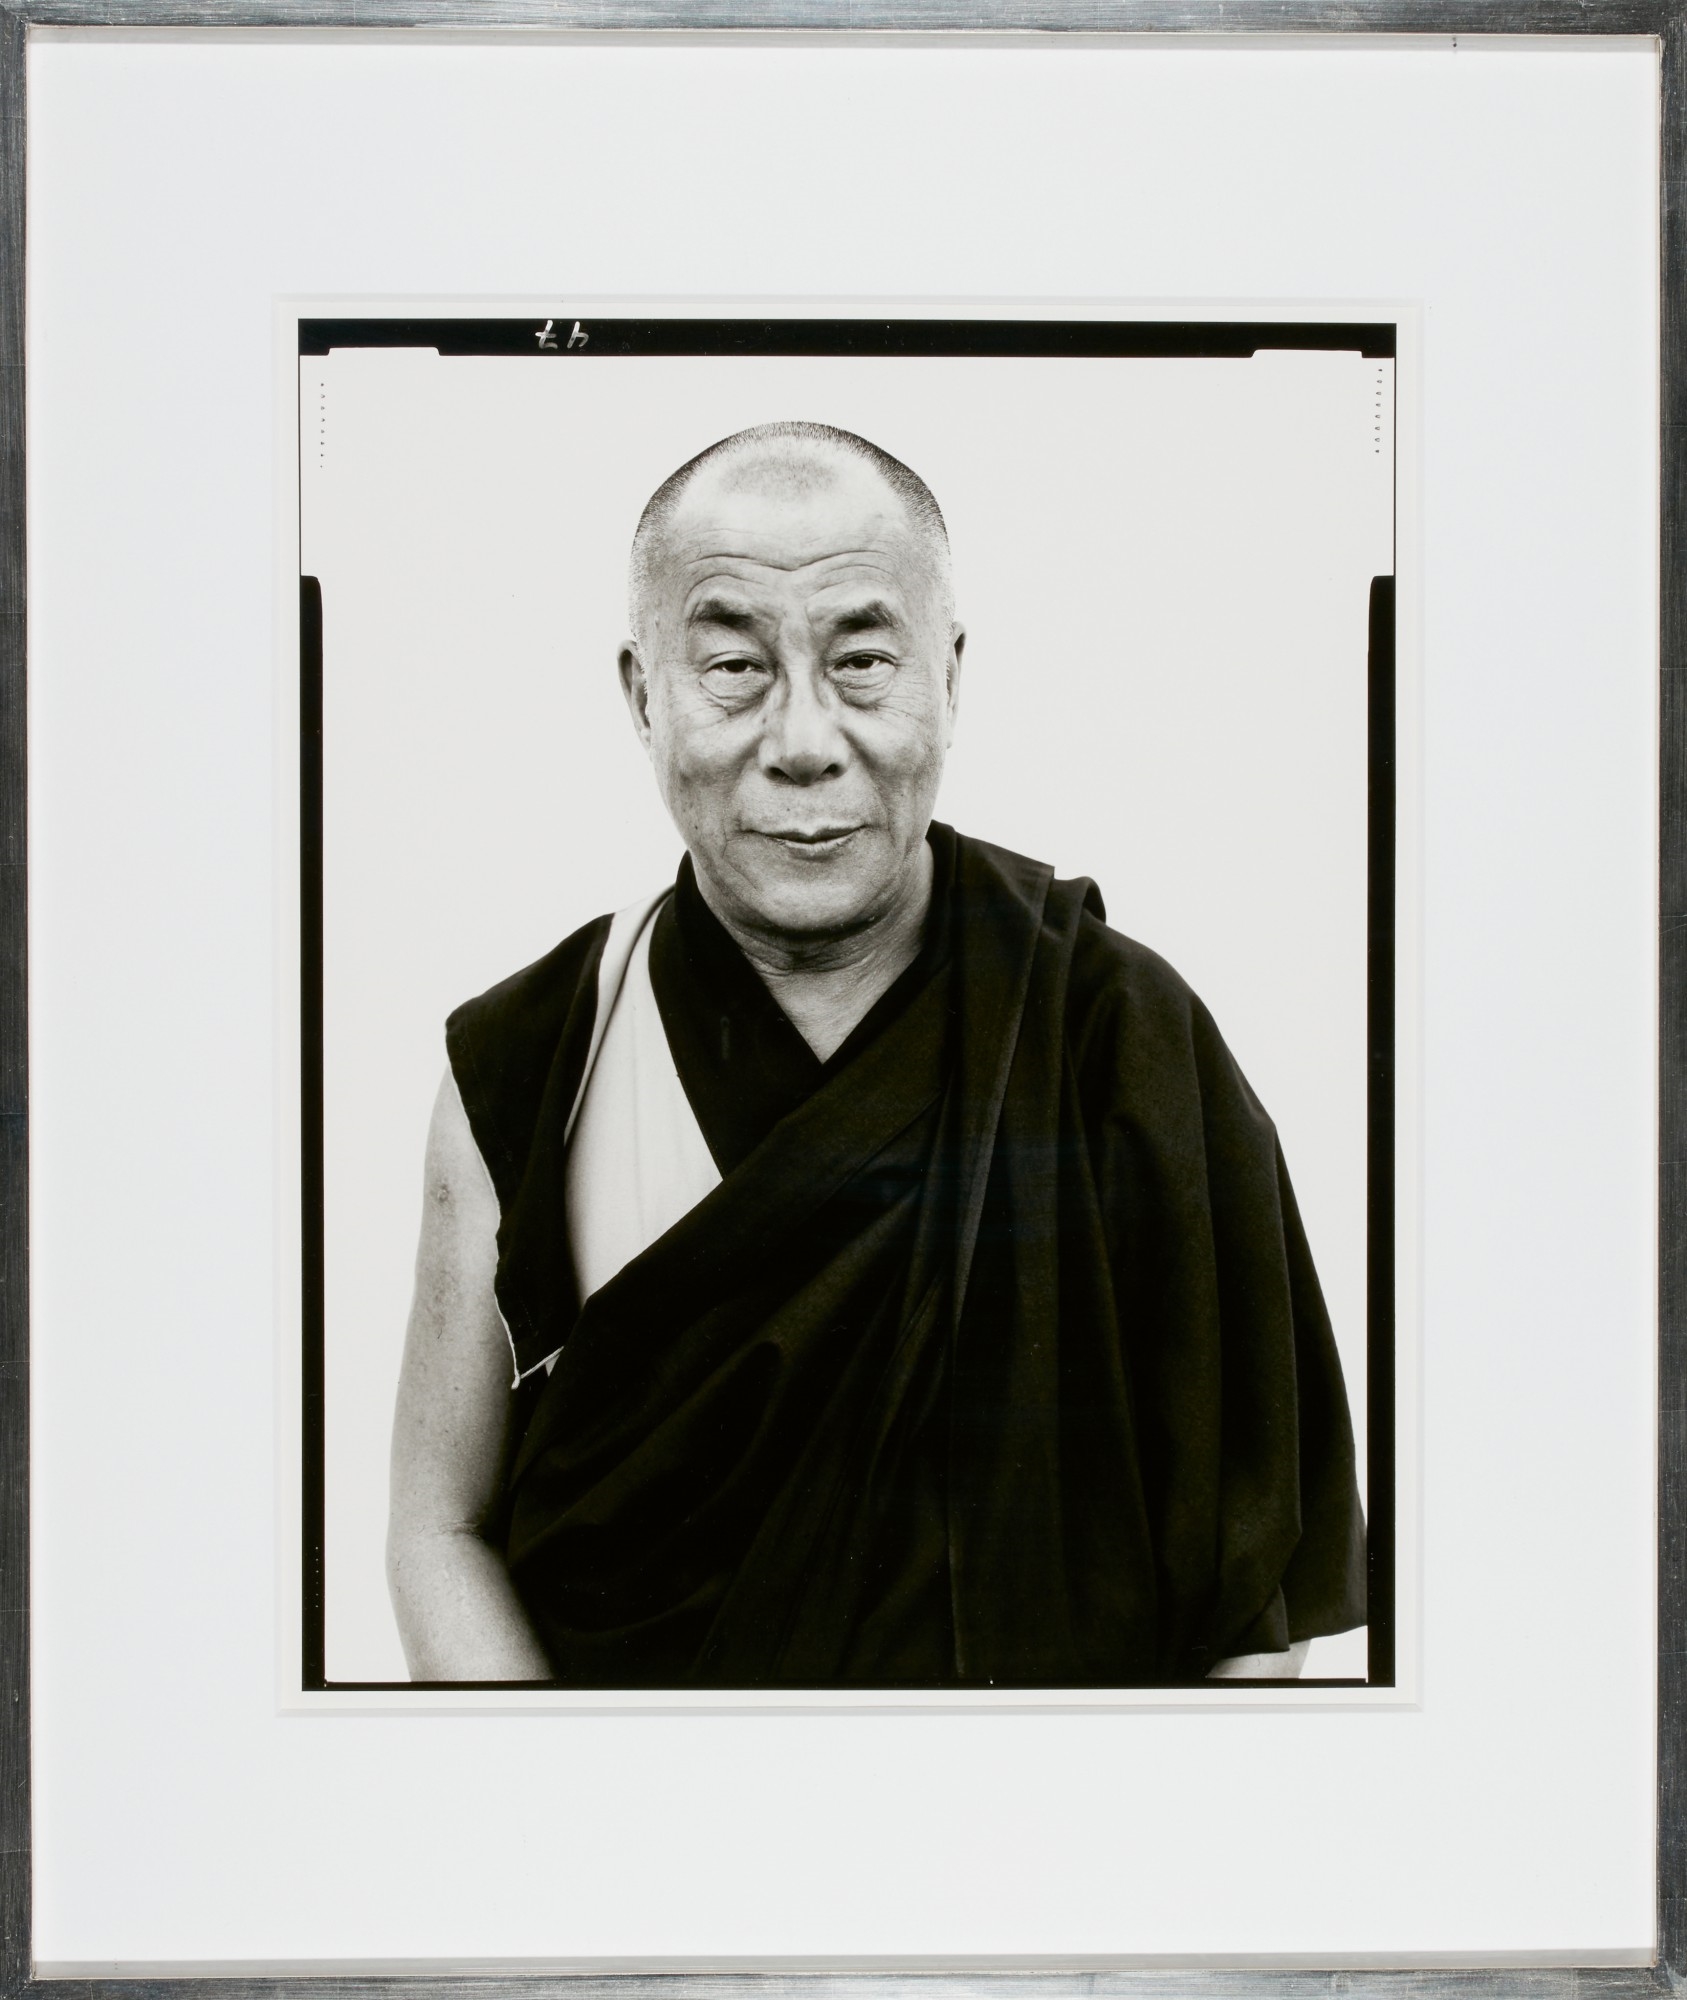 Artwork by Richard Avedon, His Holiness, The Dalai Lama', Kamataka, India, Made of Silver print